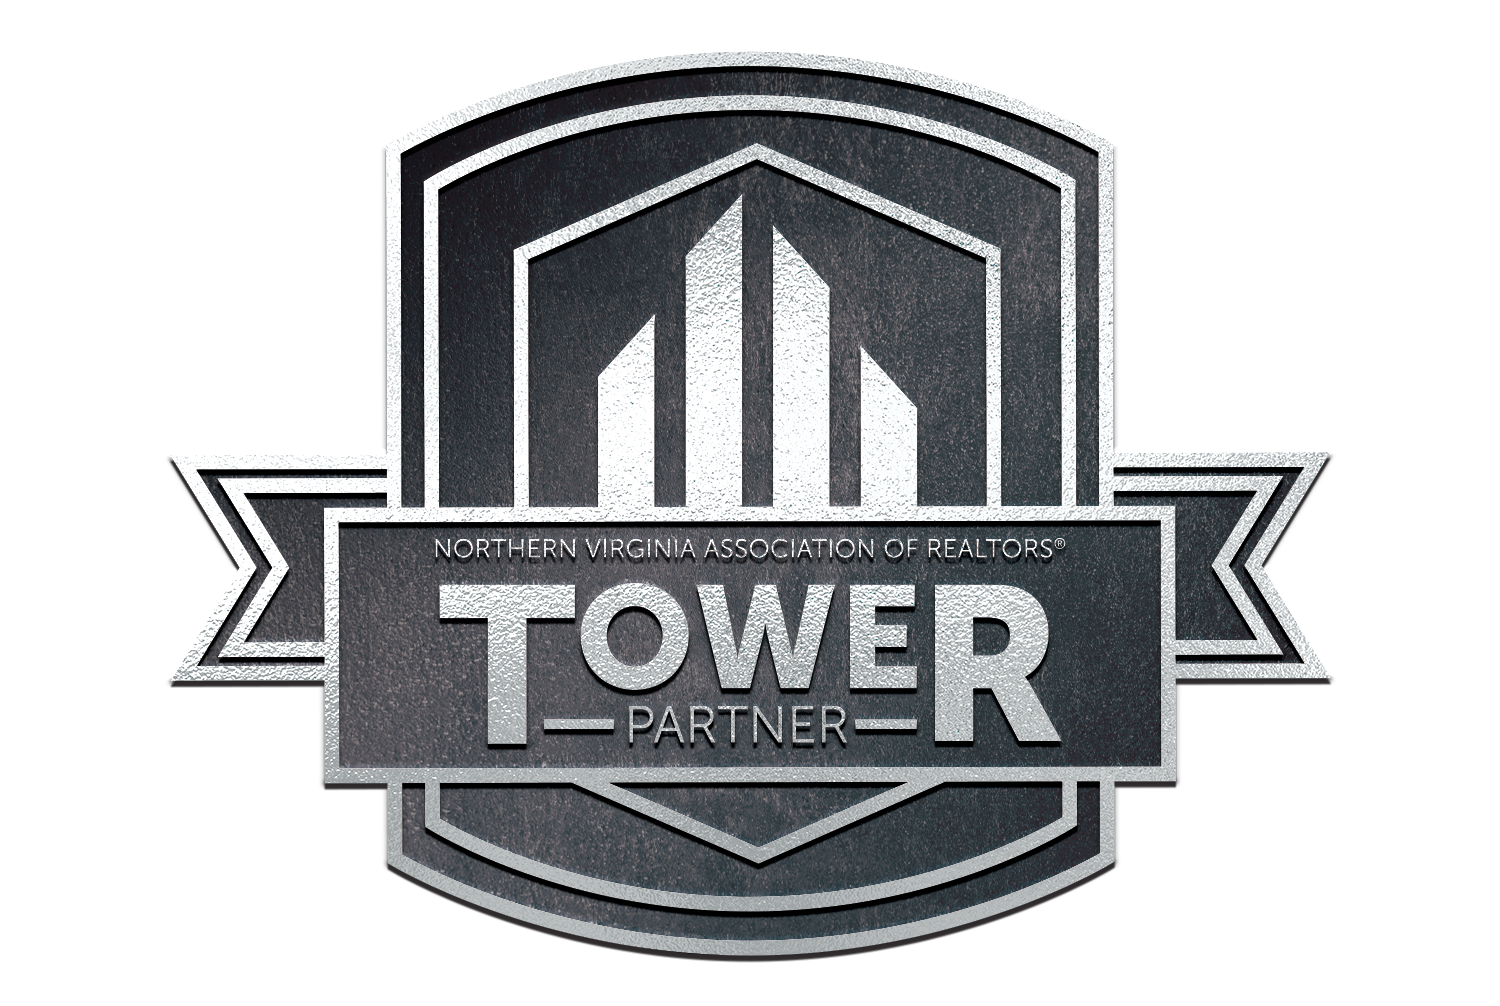 tower partner logo